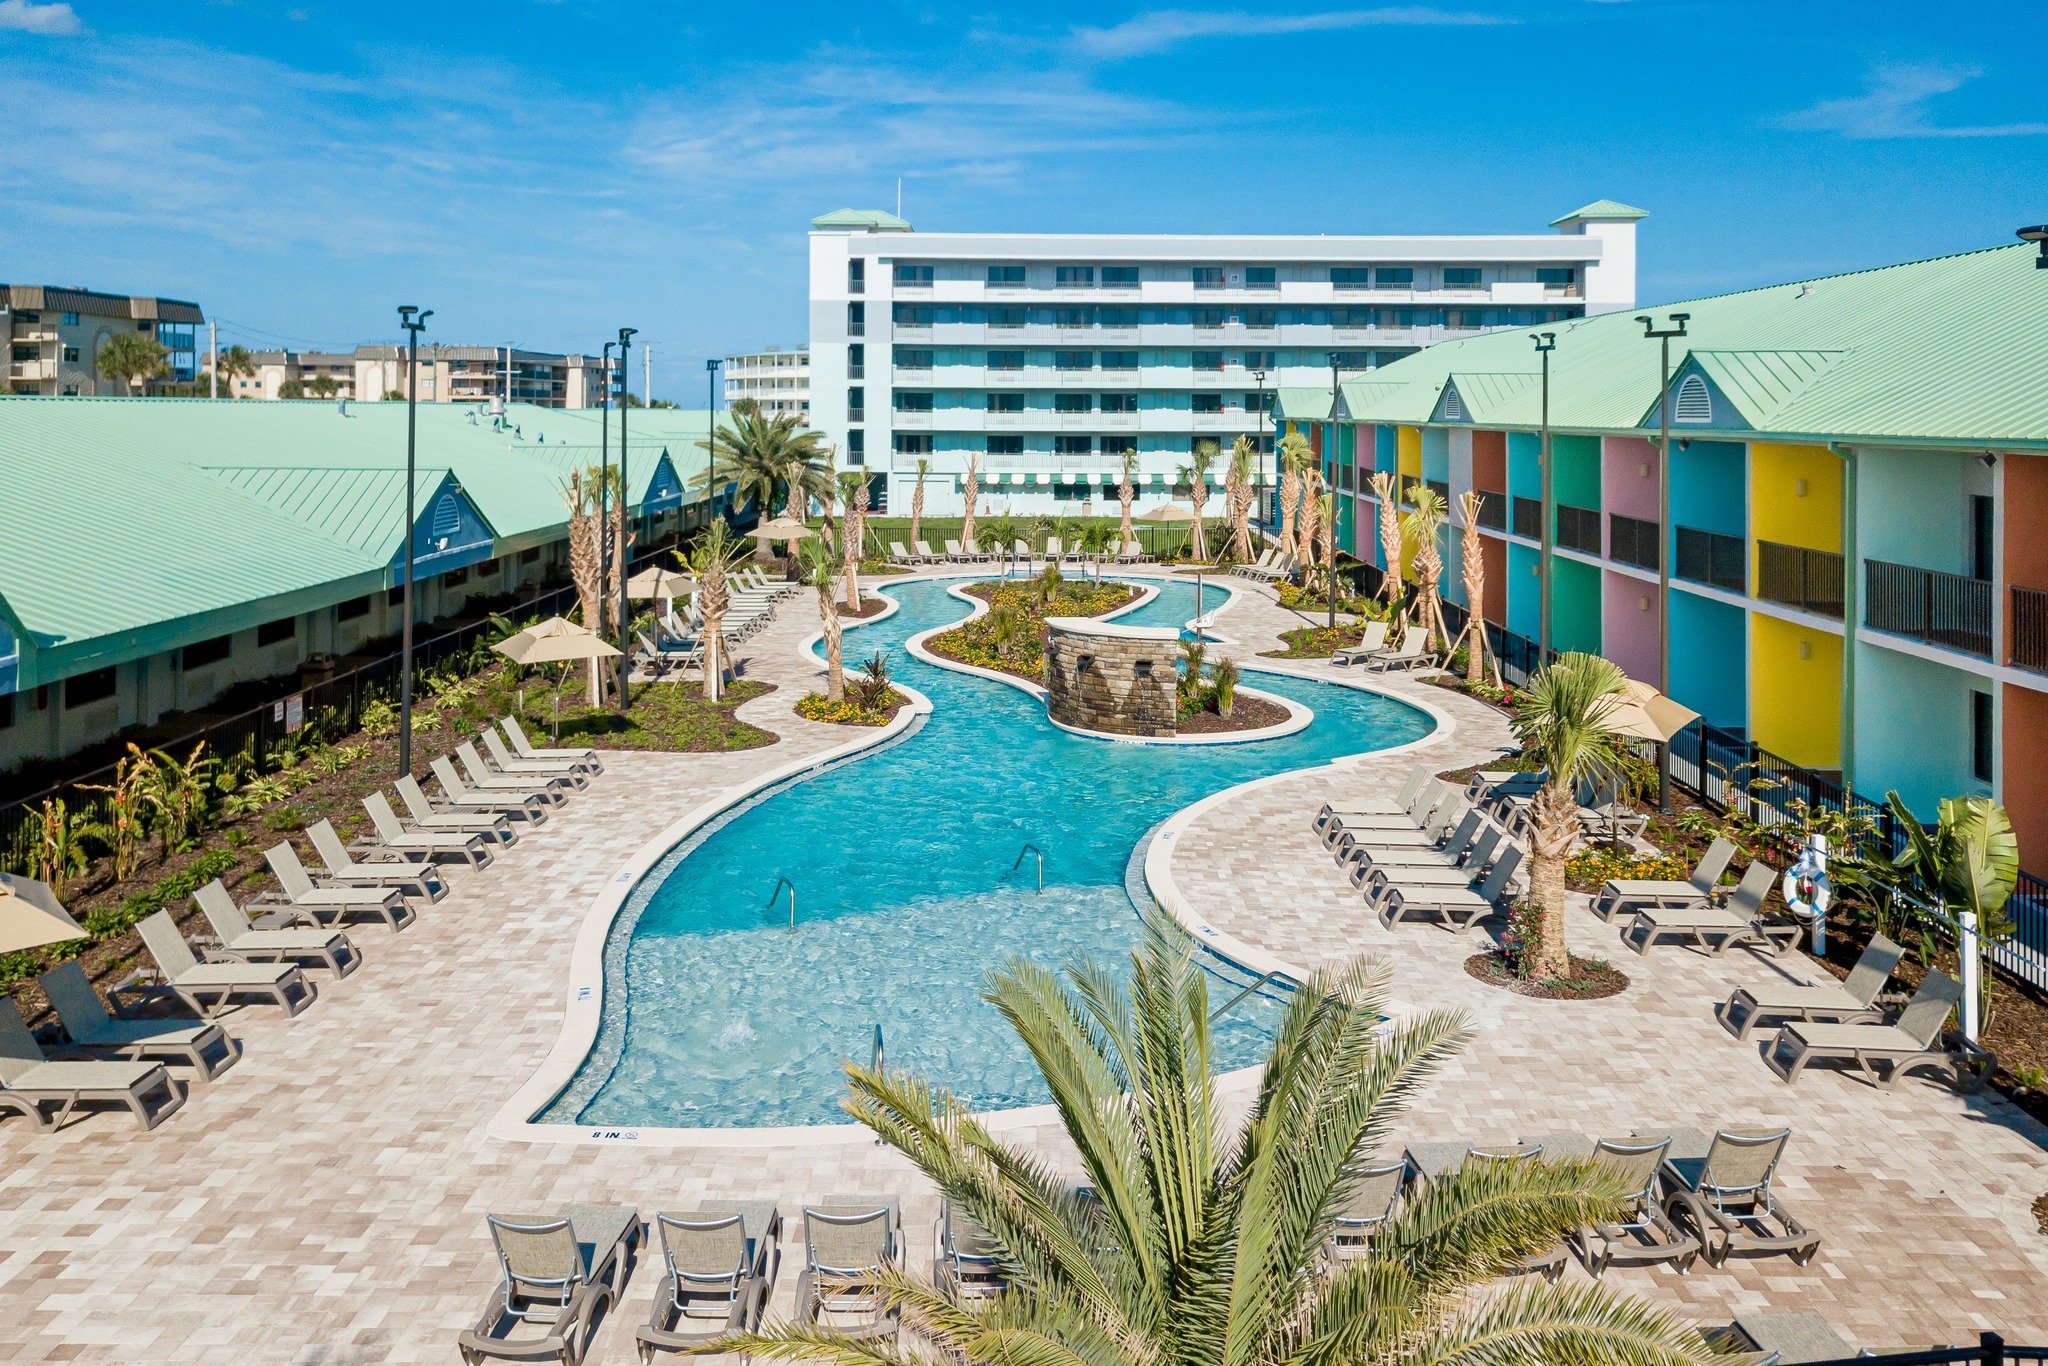 Beachside Hotel & Suites